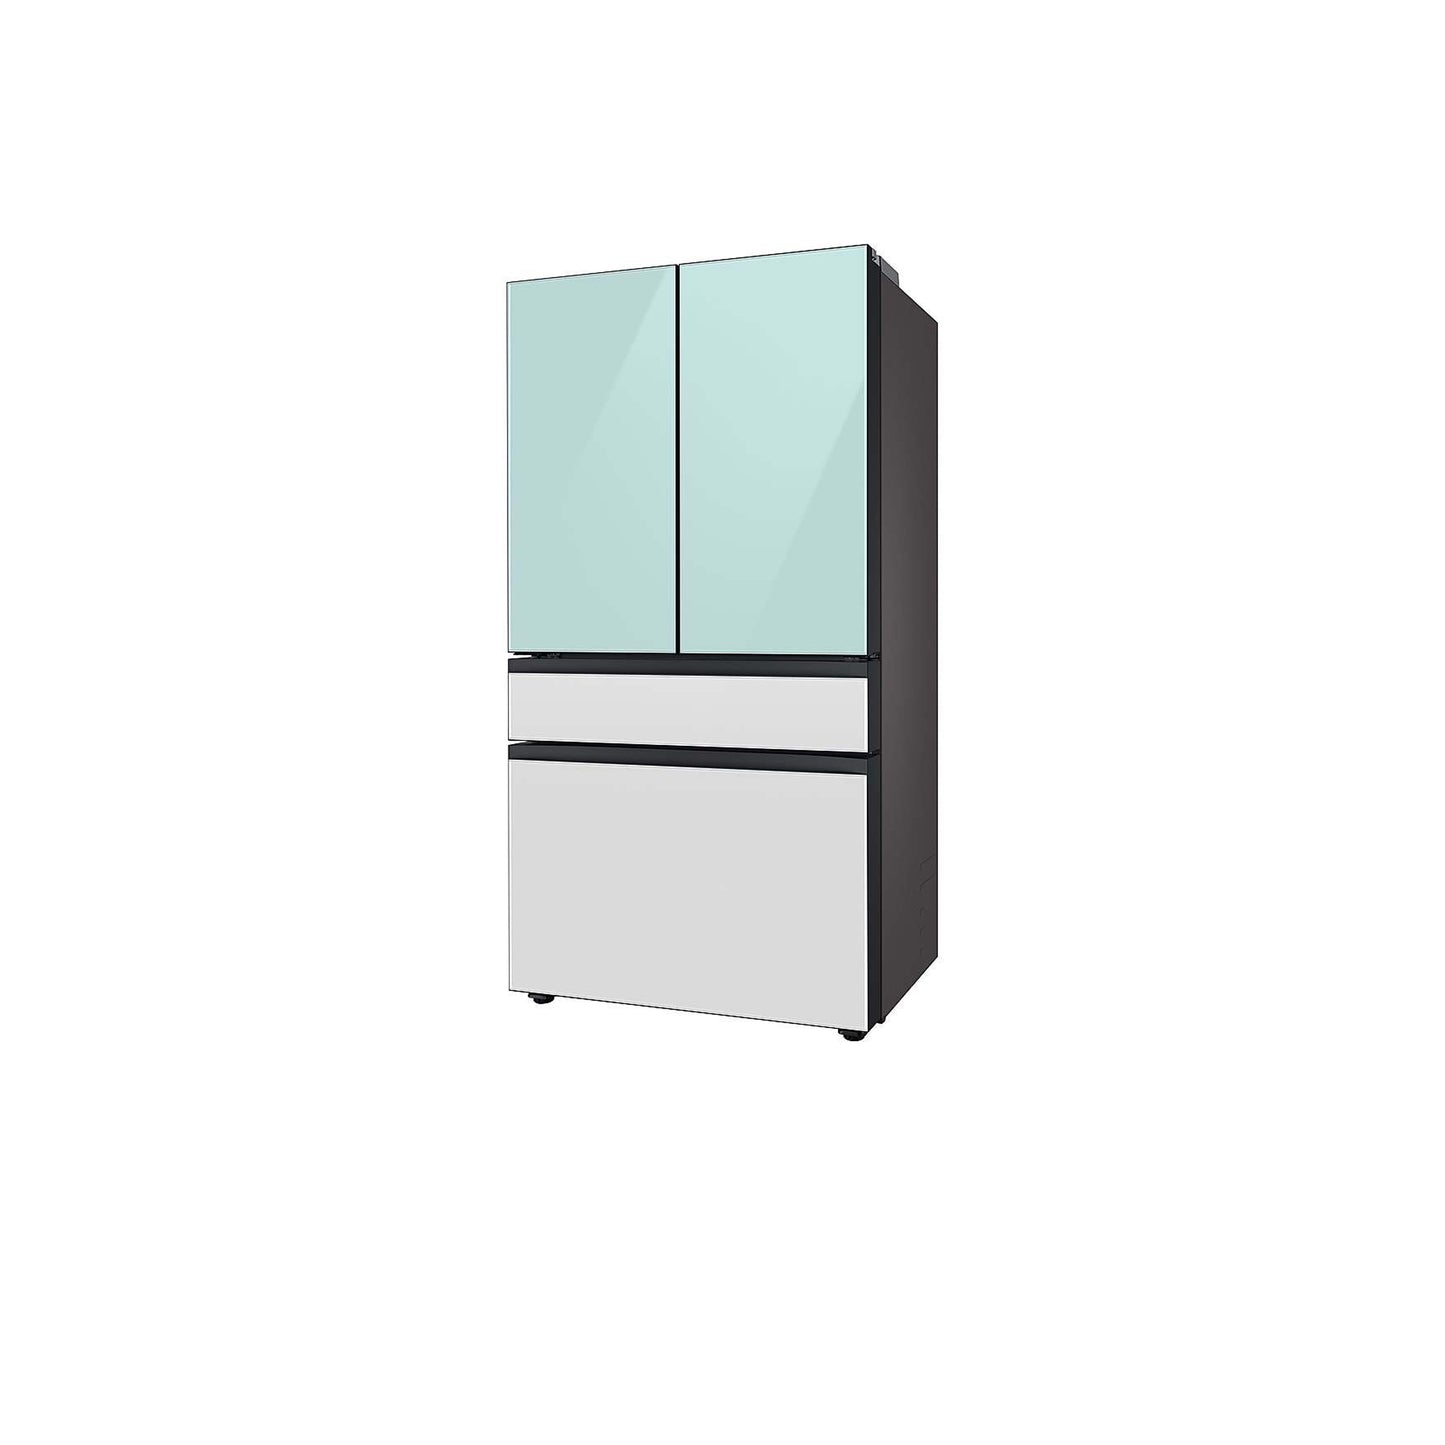 Bespoke 4-Door French Door Refrigerator (23 cu. ft.) with Customizable Door Panel Colors and Beverage Center™ in Matte Grey Glass.